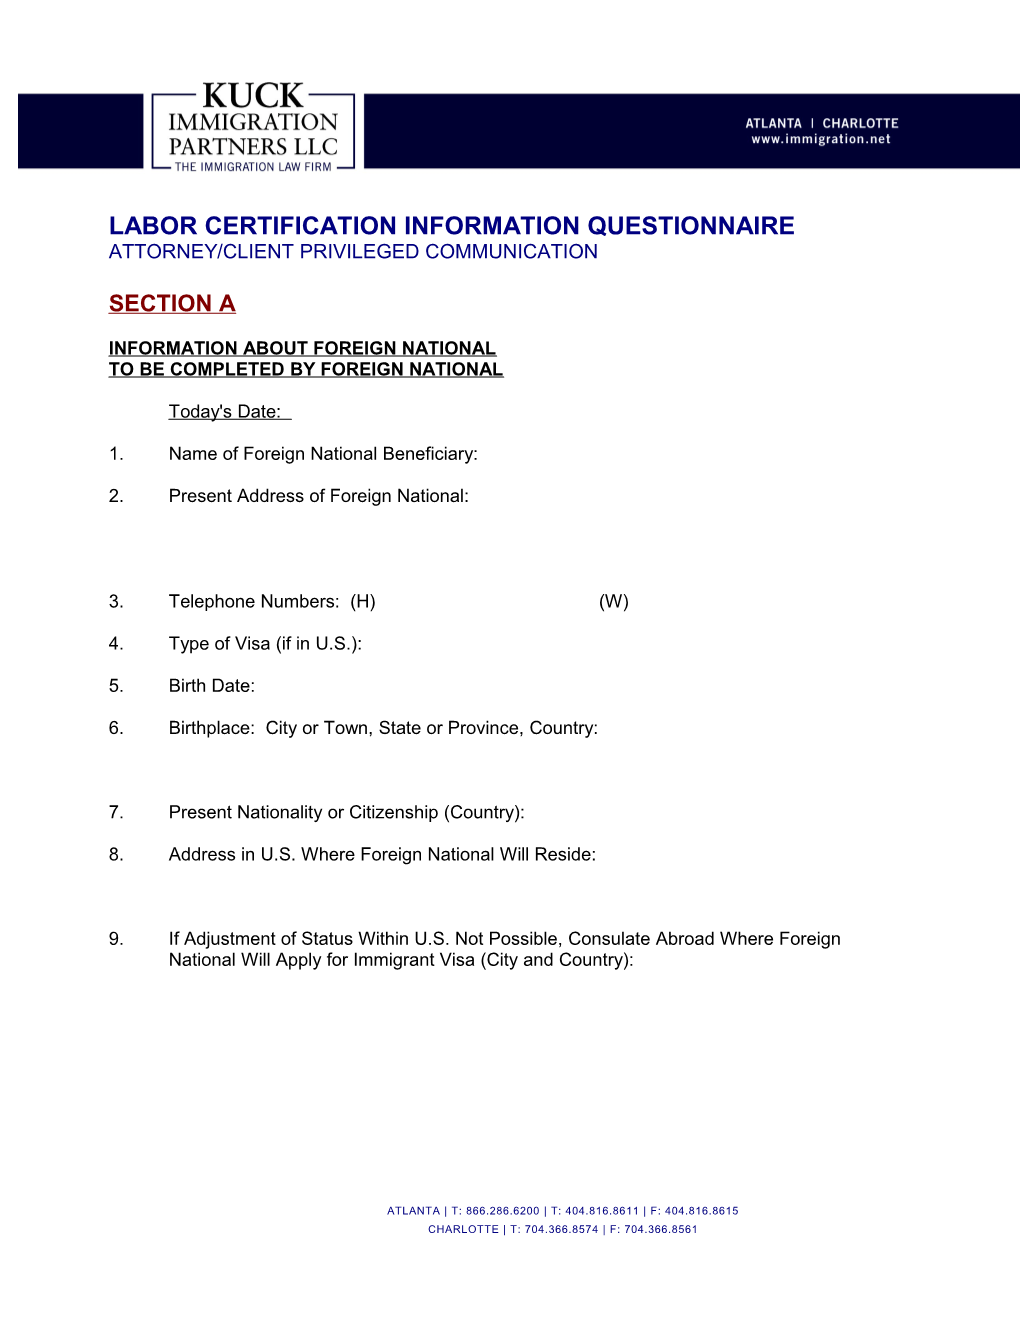 Labor Certification Questionnaire